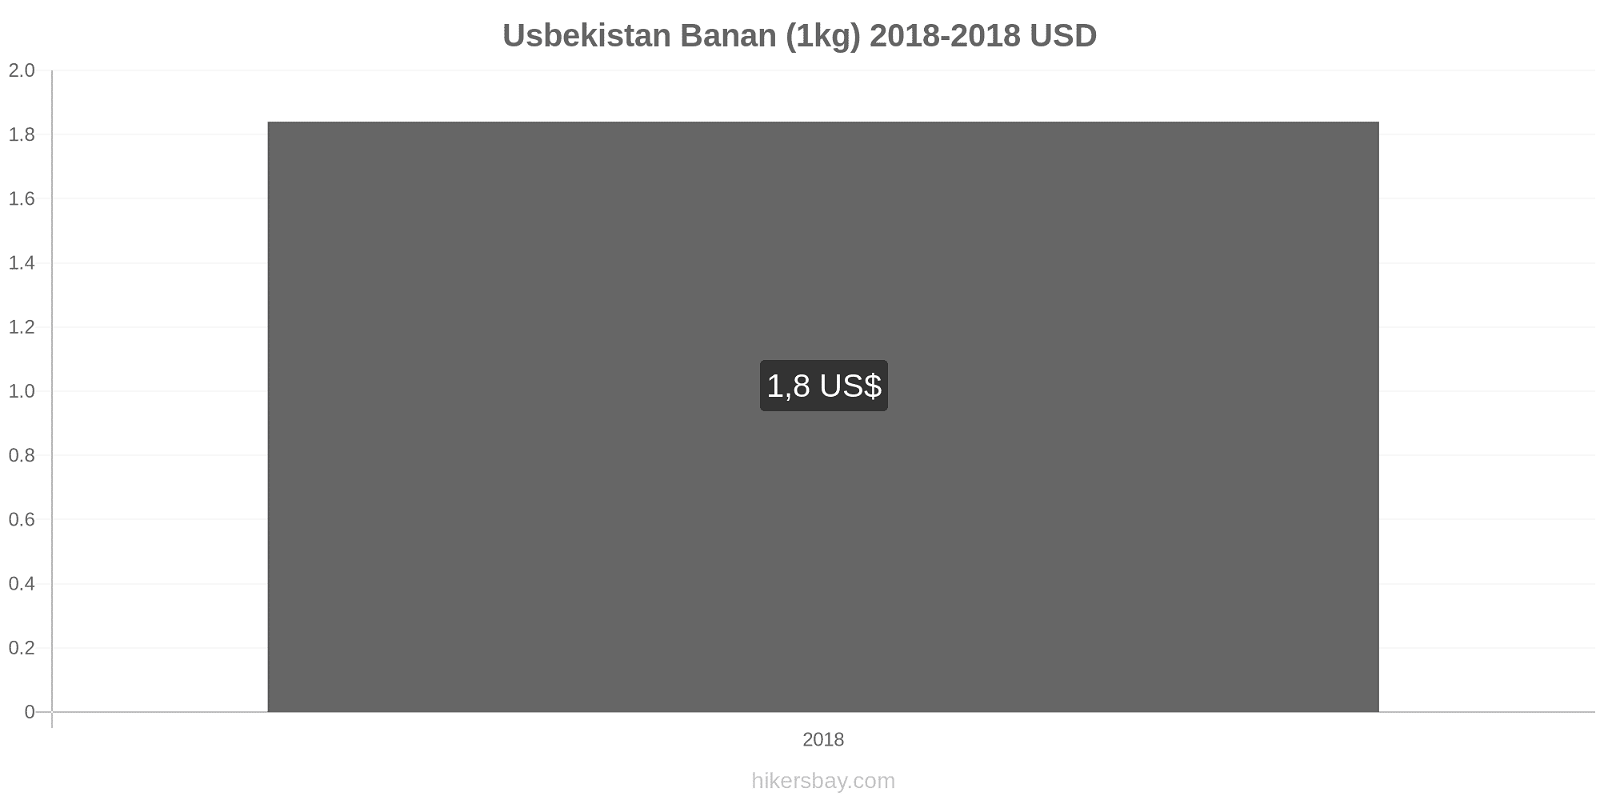 Usbekistan prisændringer Bananer (1kg) hikersbay.com